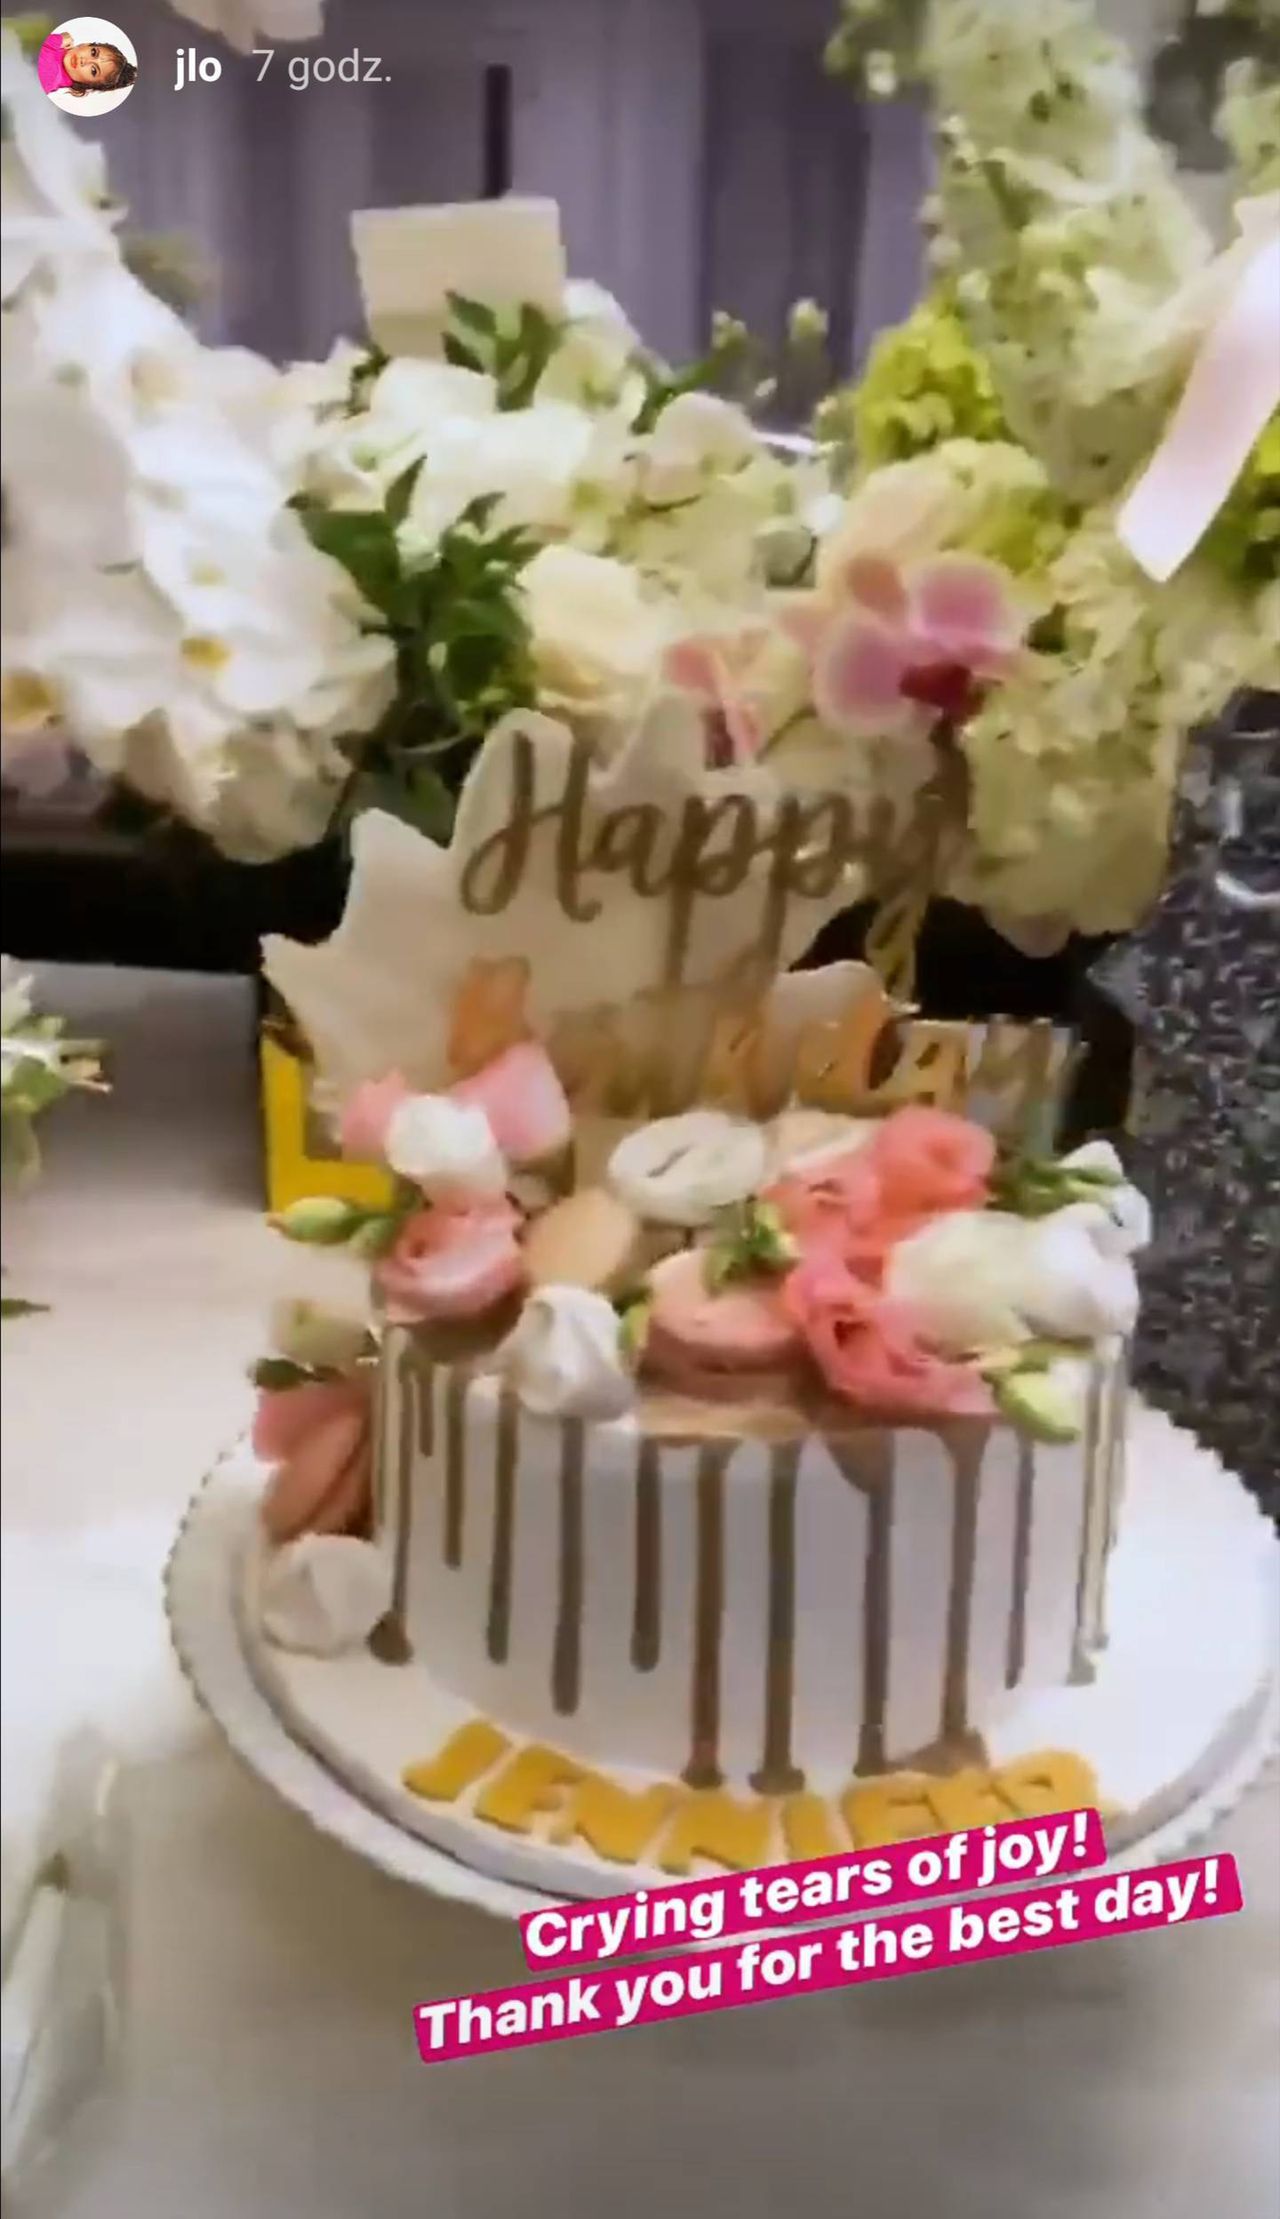 Jennifer Lopez pochwaliła się prezentami urodzinowymi